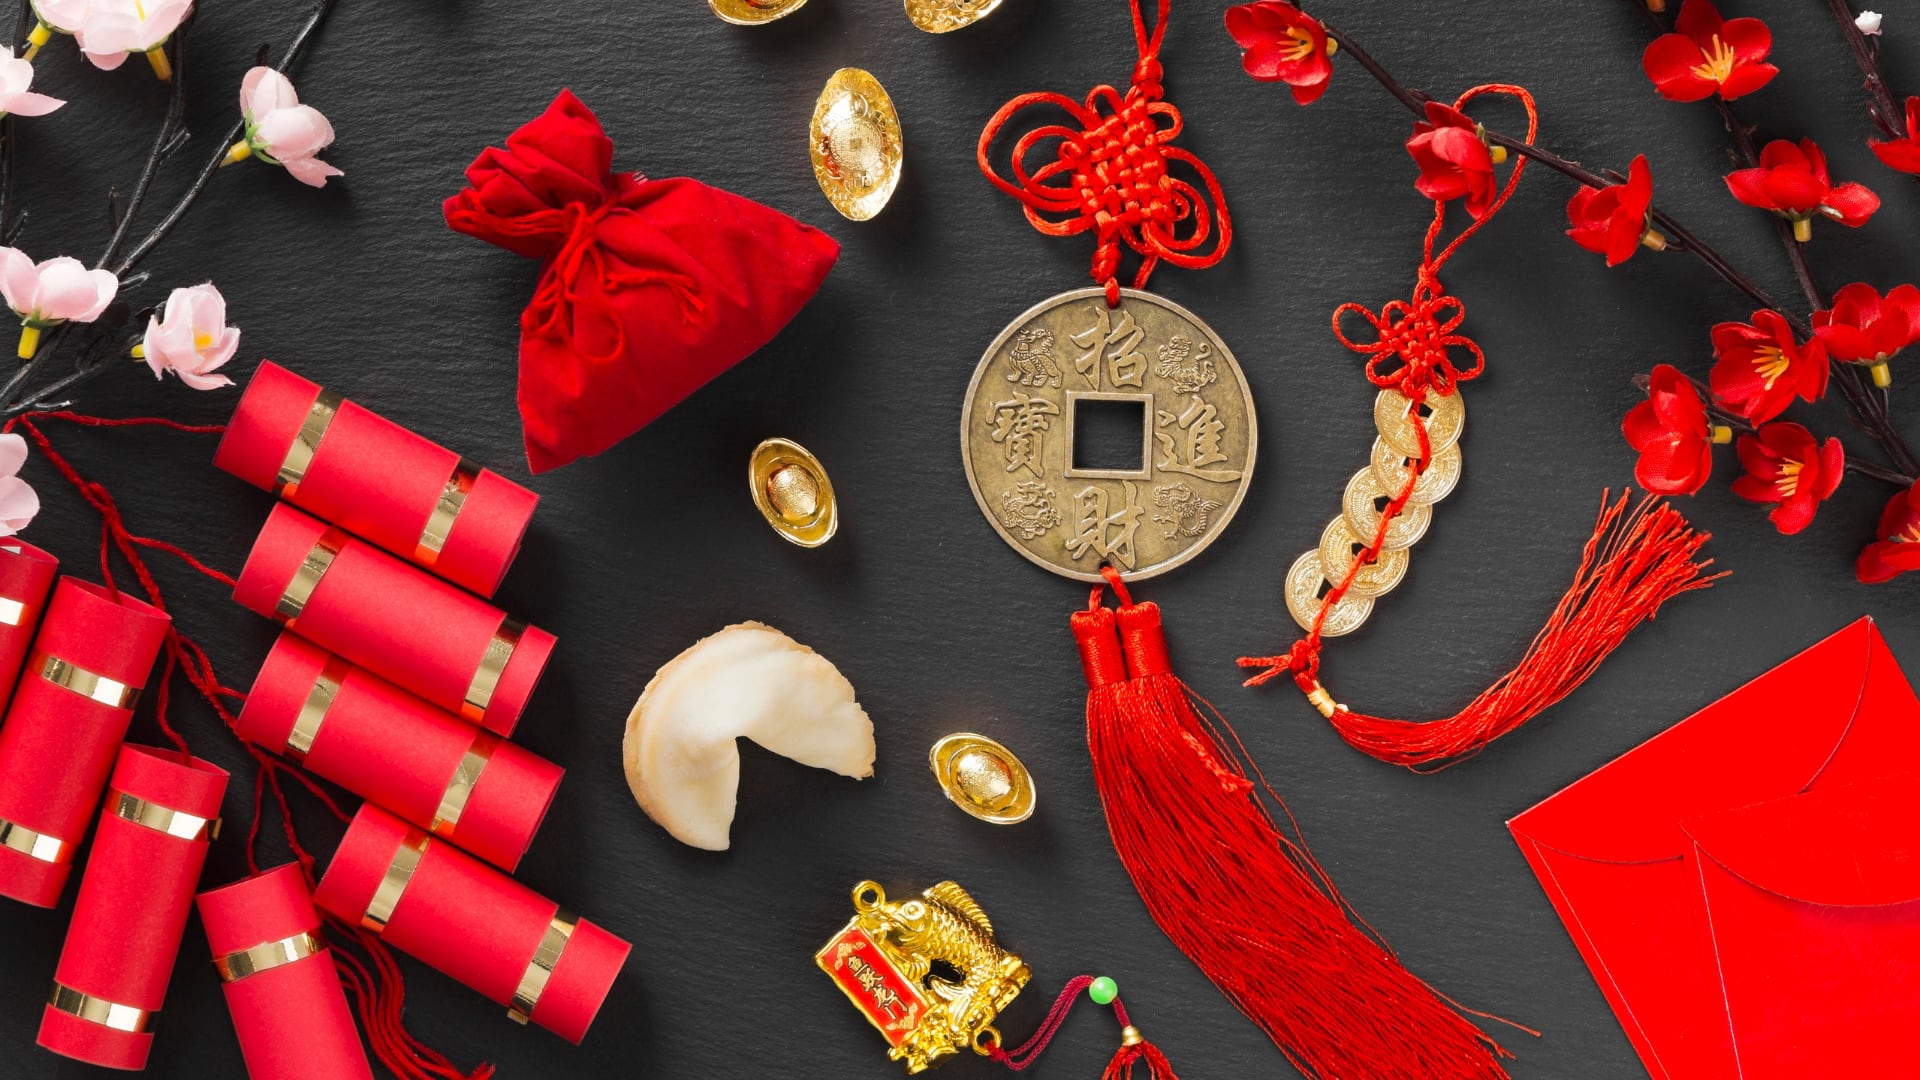 conjunción de mercurio y marte marcará el último fin de semana de enero en el zodiaco chino